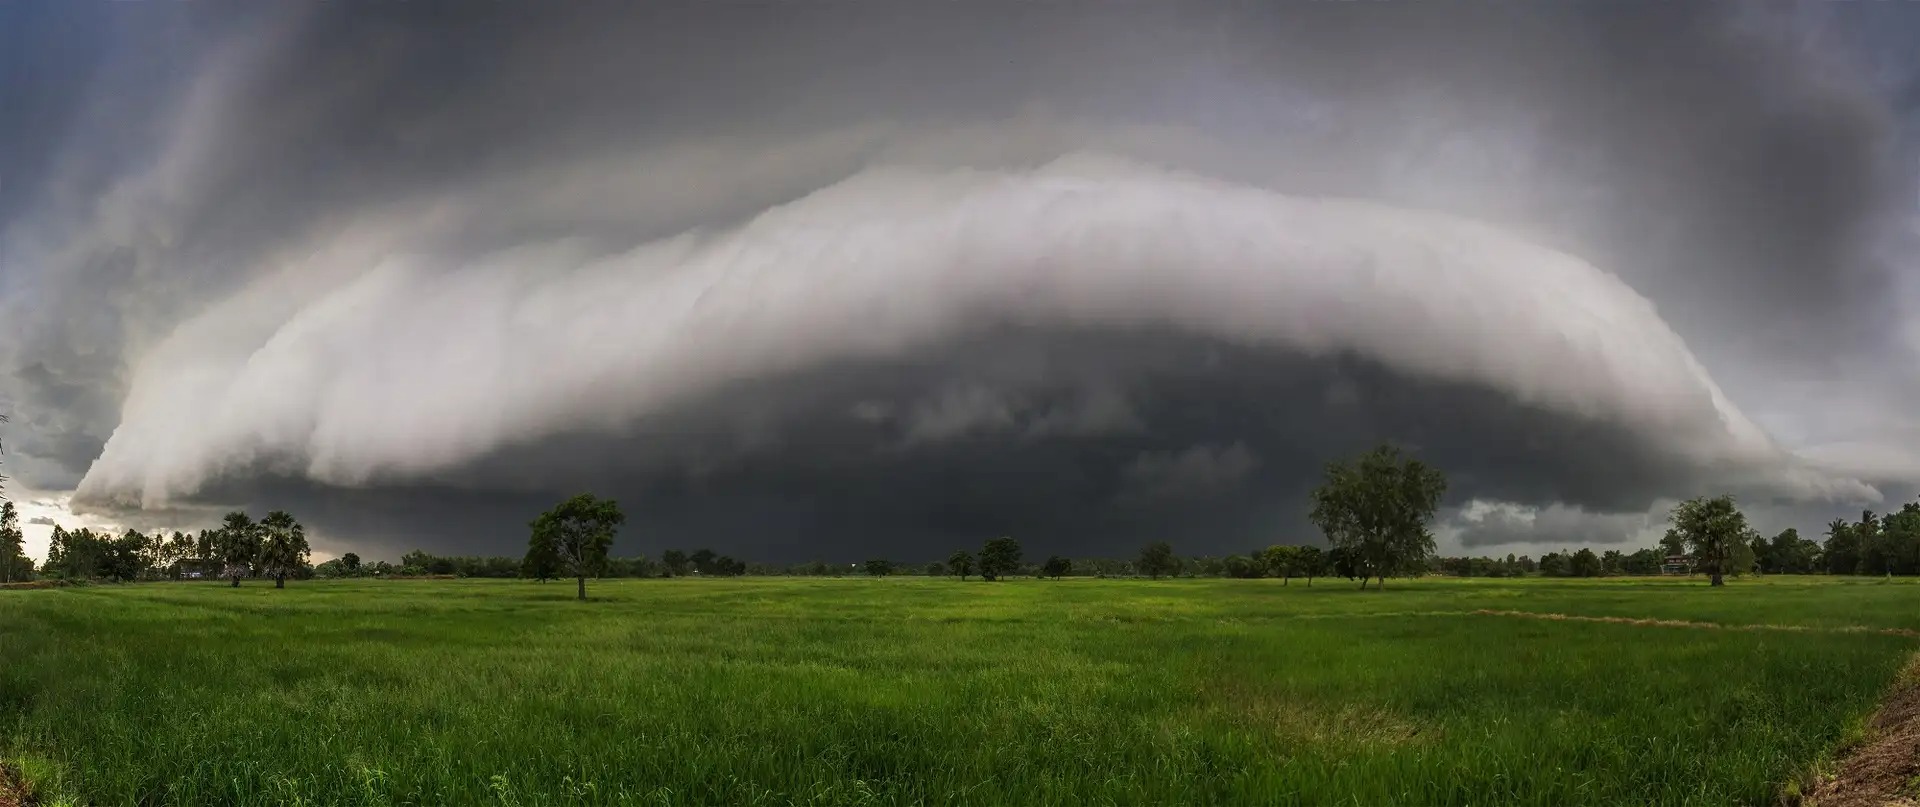 arcus derecho - Außergewöhnliches Wetterphänomen: Derecho, eine extrem gewaltige Gewitterlinie.